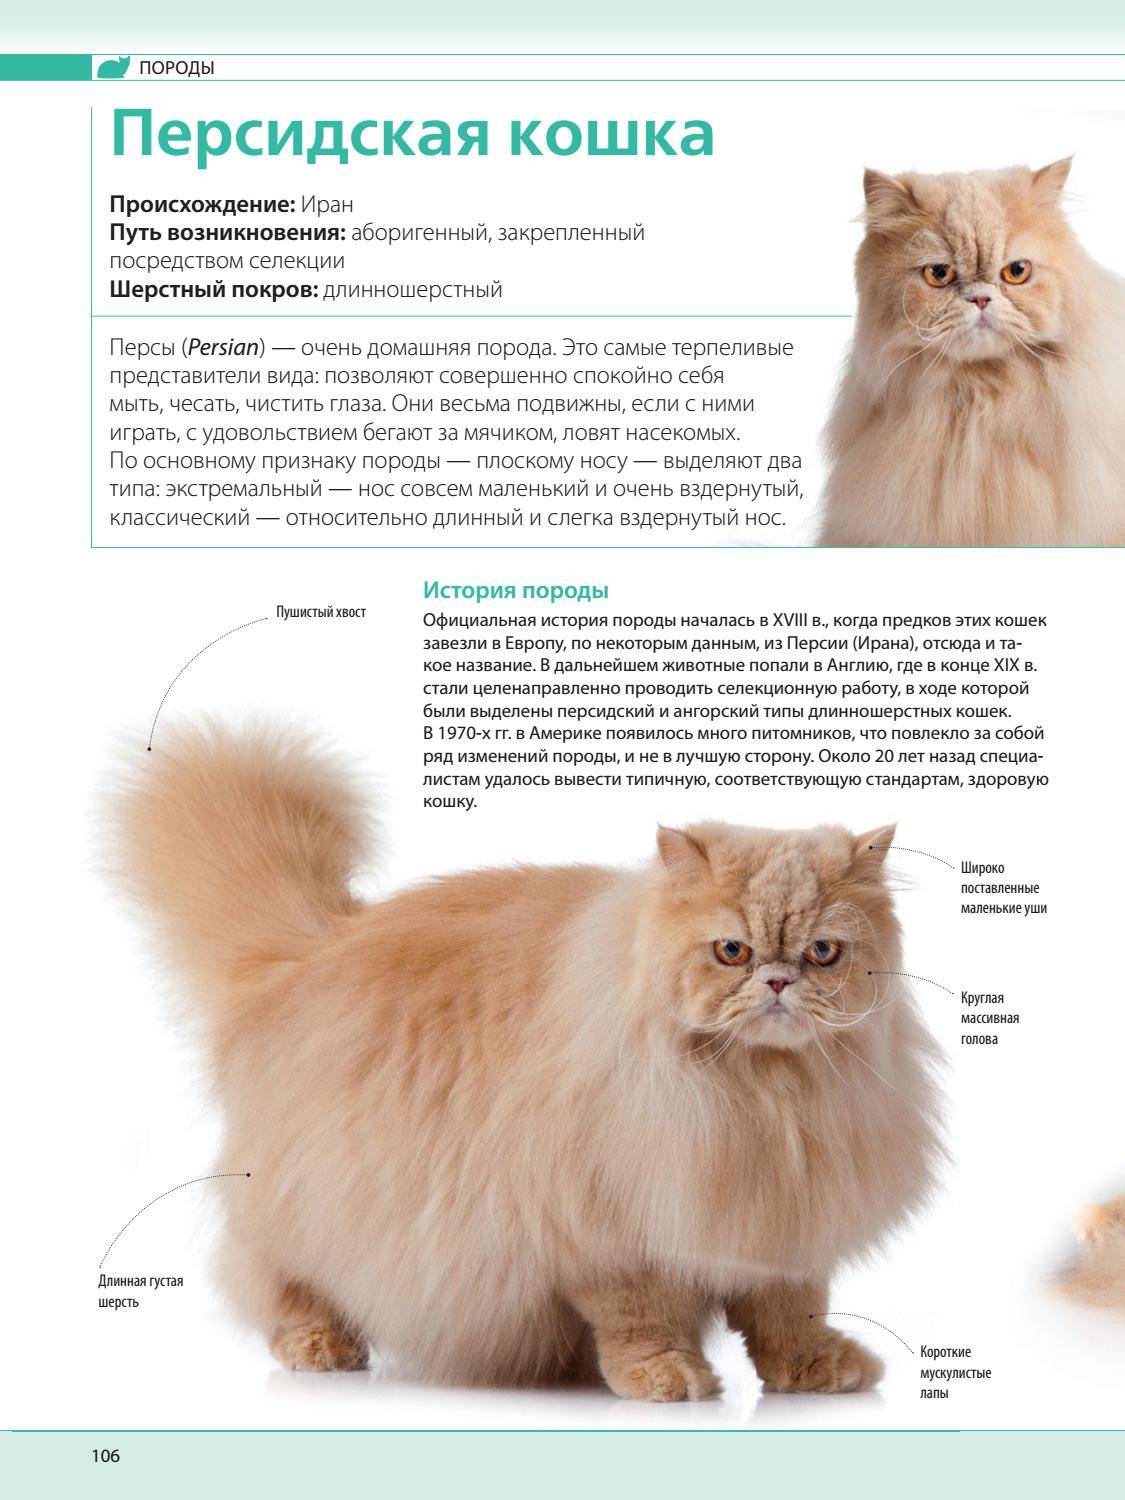 Особенности кормления персидского кота, которые необходимо знать хозяину